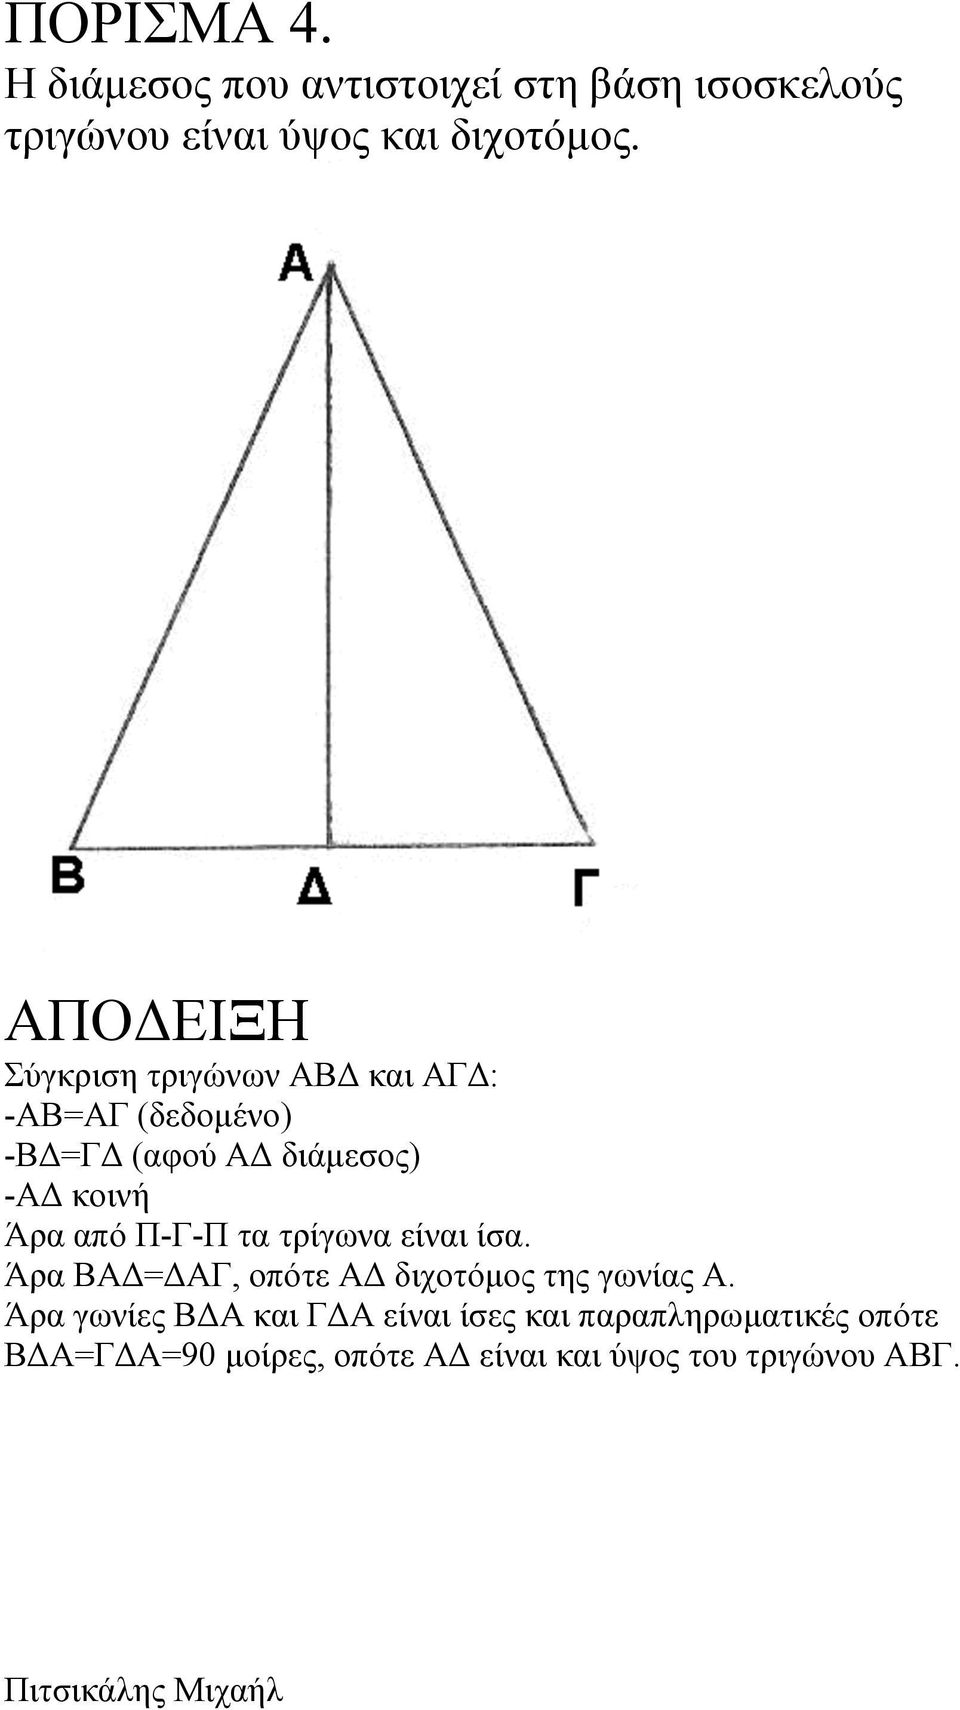 Π-Γ-Π τα τρίγωνα είναι ίσα. Άρα ΒΑΔ=ΔΑΓ, οπότε ΑΔ διχοτόµος της γωνίας Α.